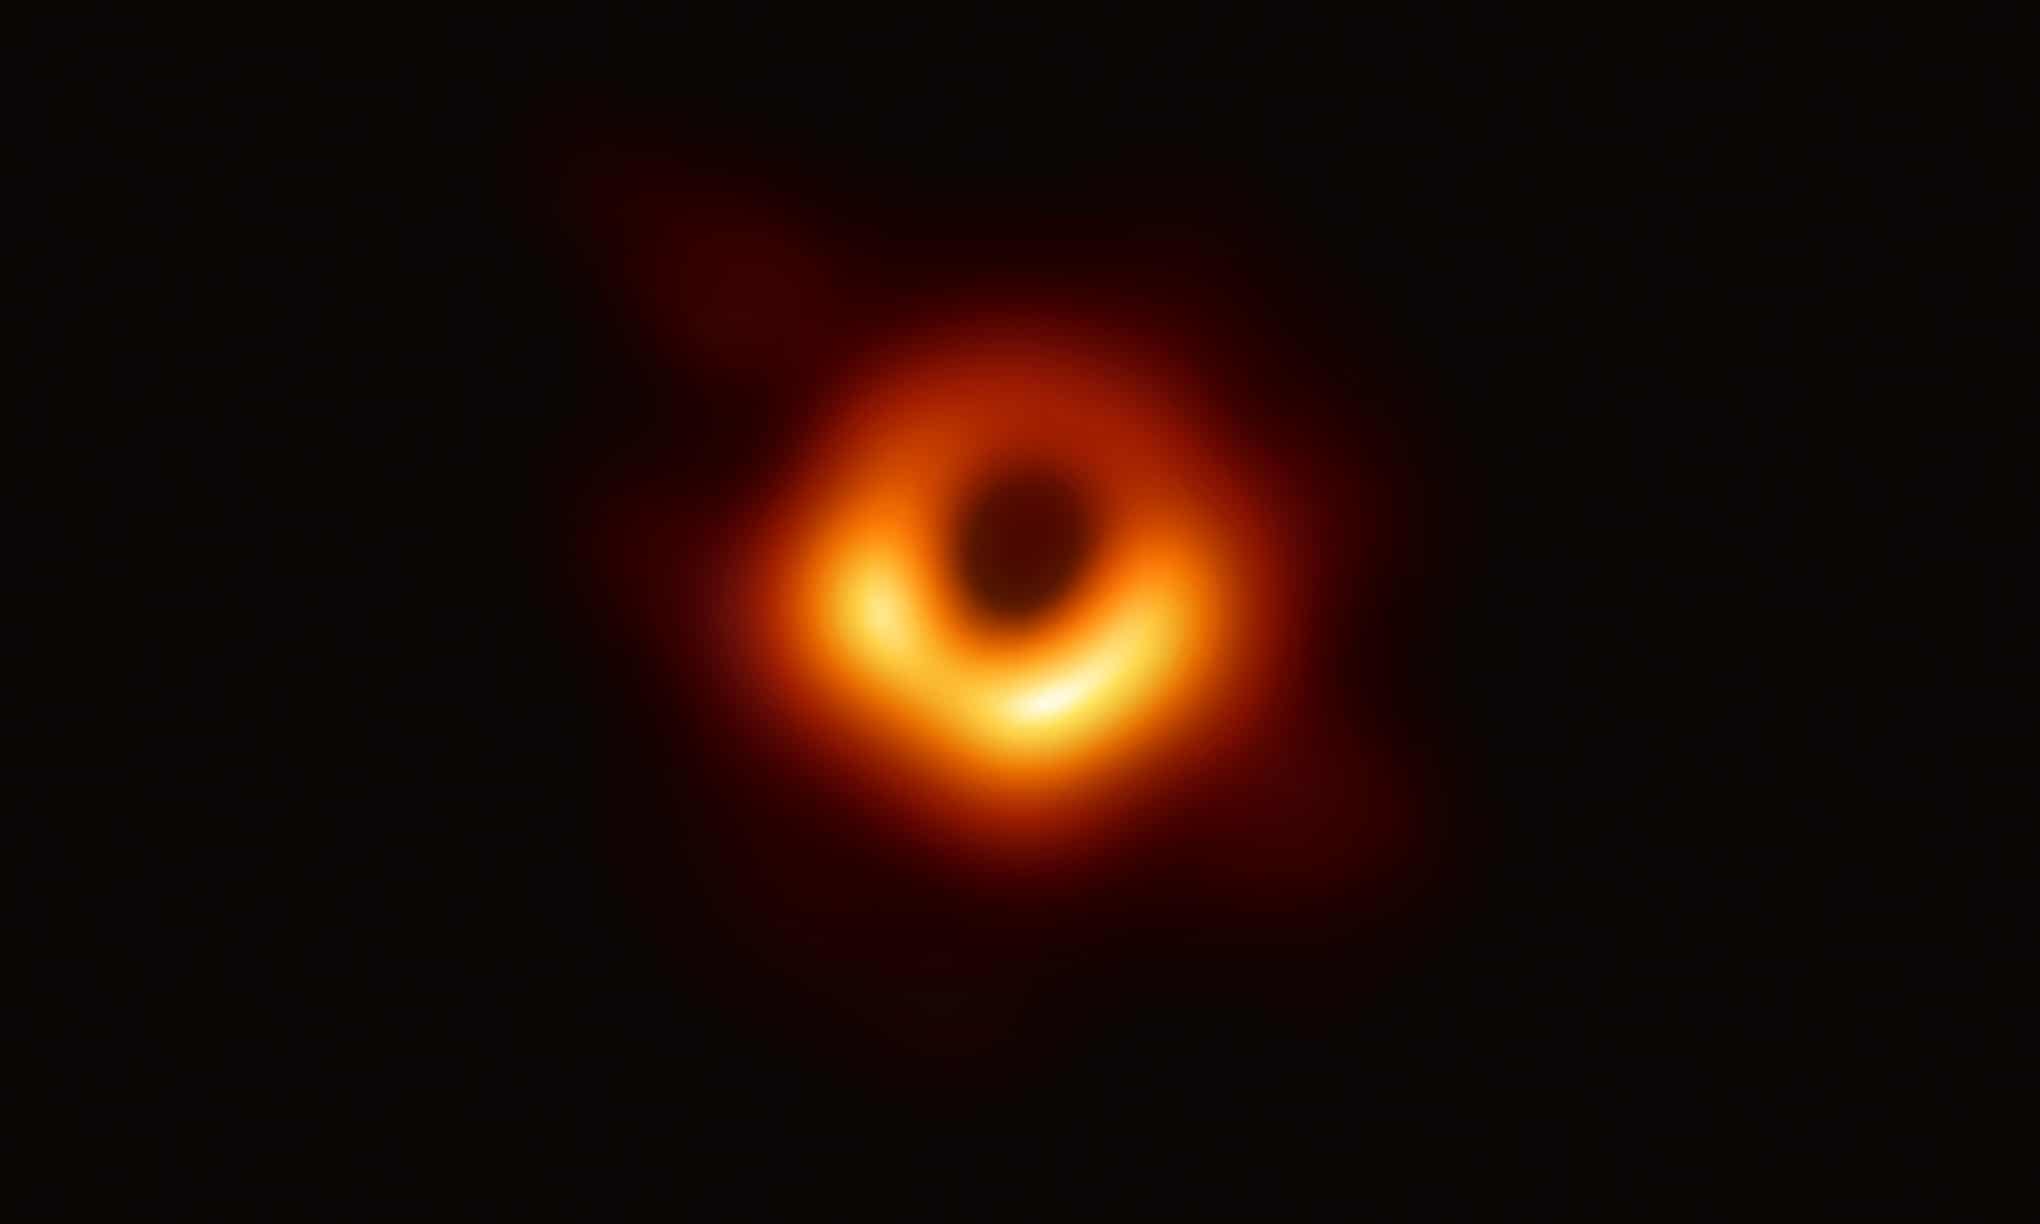 La primera imagen de un agujero negro muestra un anillo brillante con un punto oscuro y central. Ese anillo es un brillante disco de gas que orbita al gigante supermasivo en la galaxia M87, y la mancha es la sombra del agujero negro